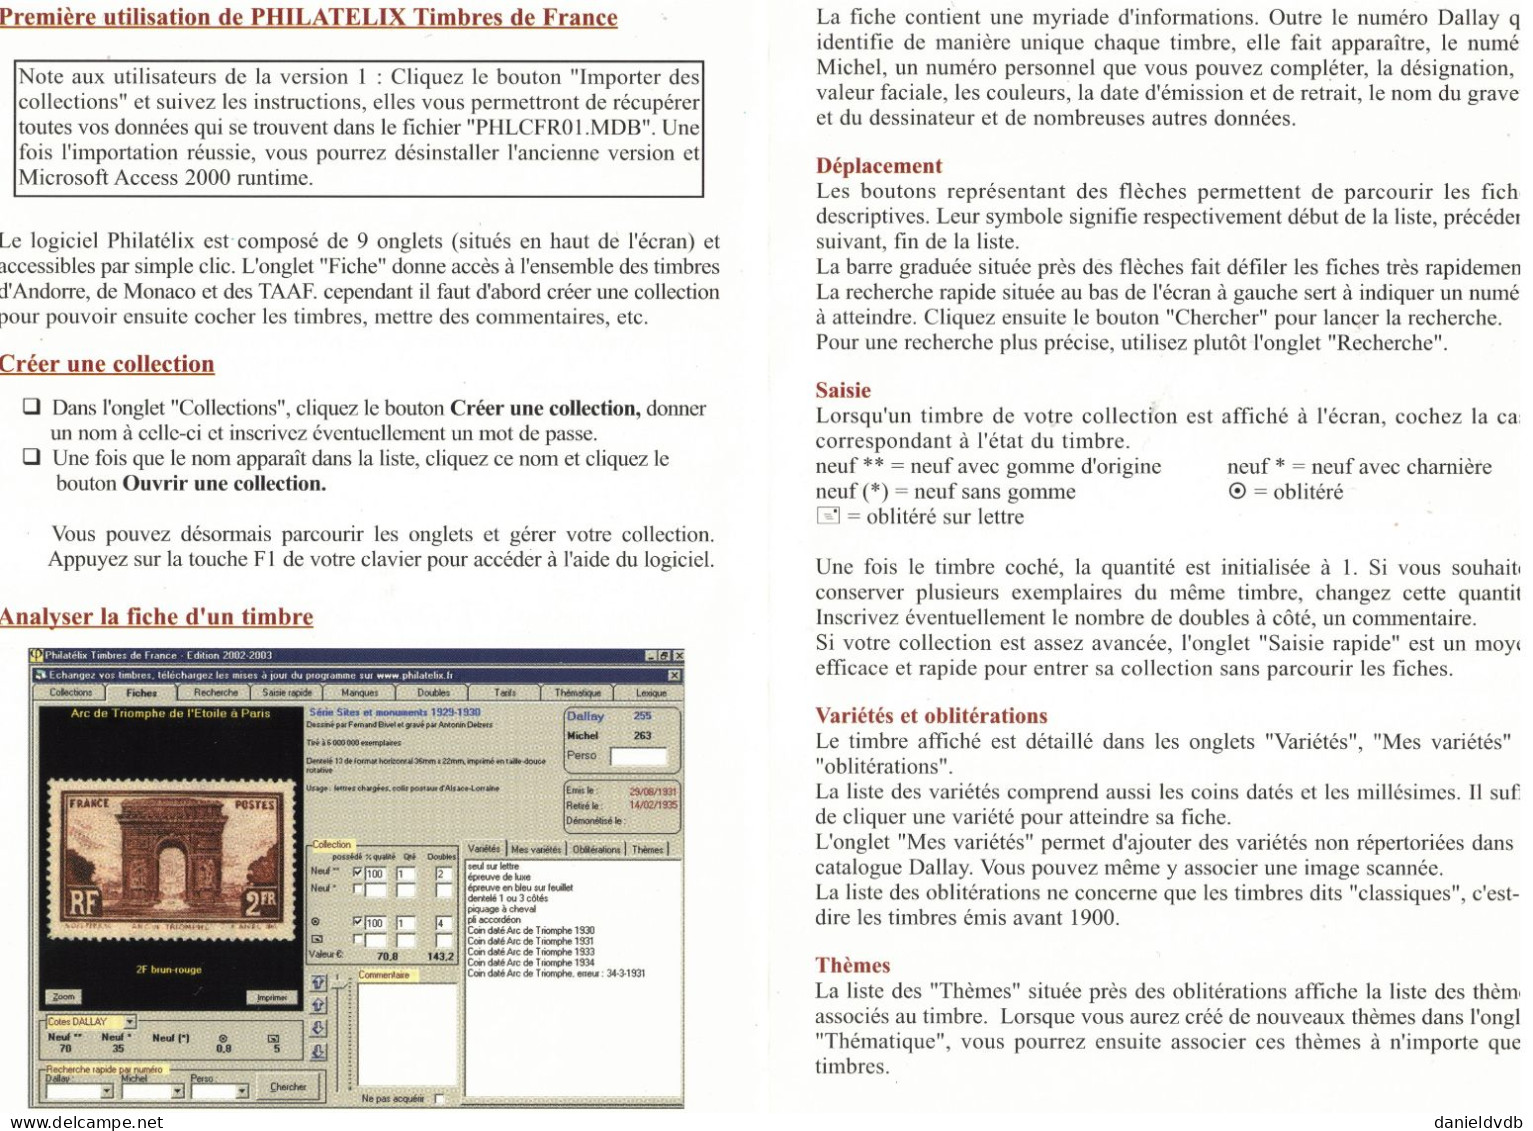 Timbres De FRANCE 1849 - 2001 Philatelix édition Dallay 2002-2003 1 CD-ROM - Francés